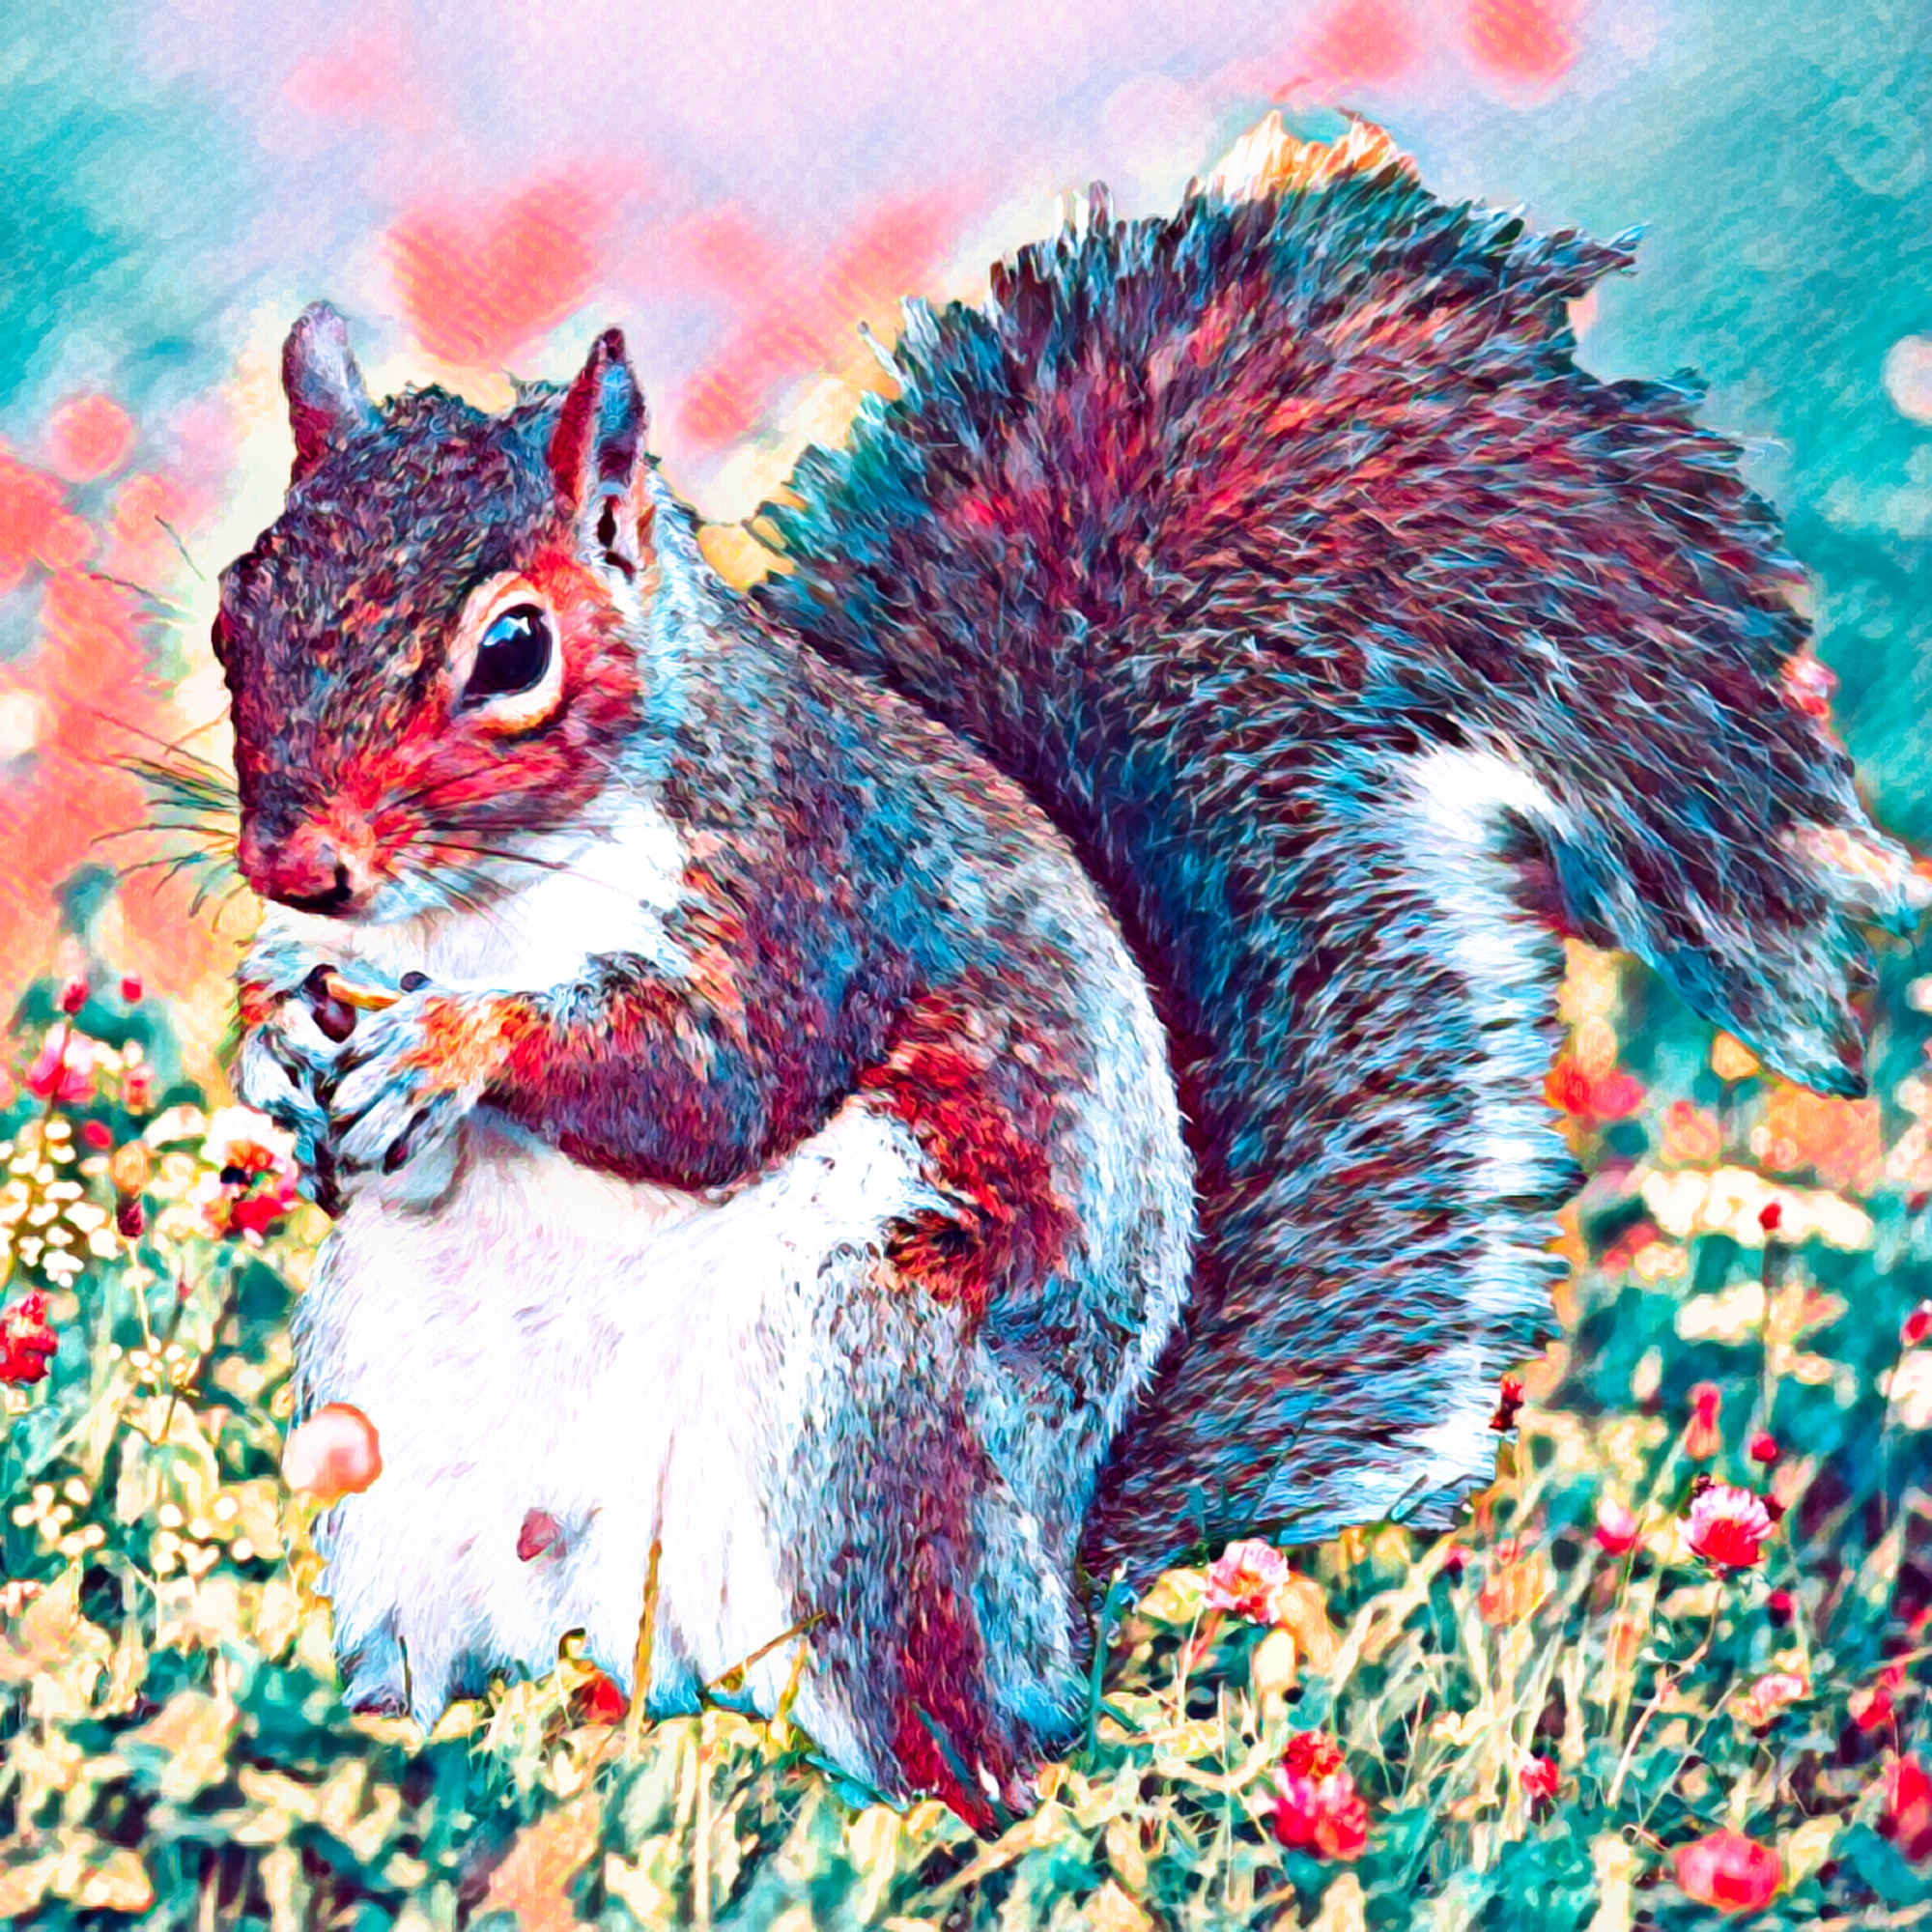 無料壁紙 背景画像素材 森のリス カラフル野花のかわいい動物イラスト Free Illustlation くりえいてぃぶ